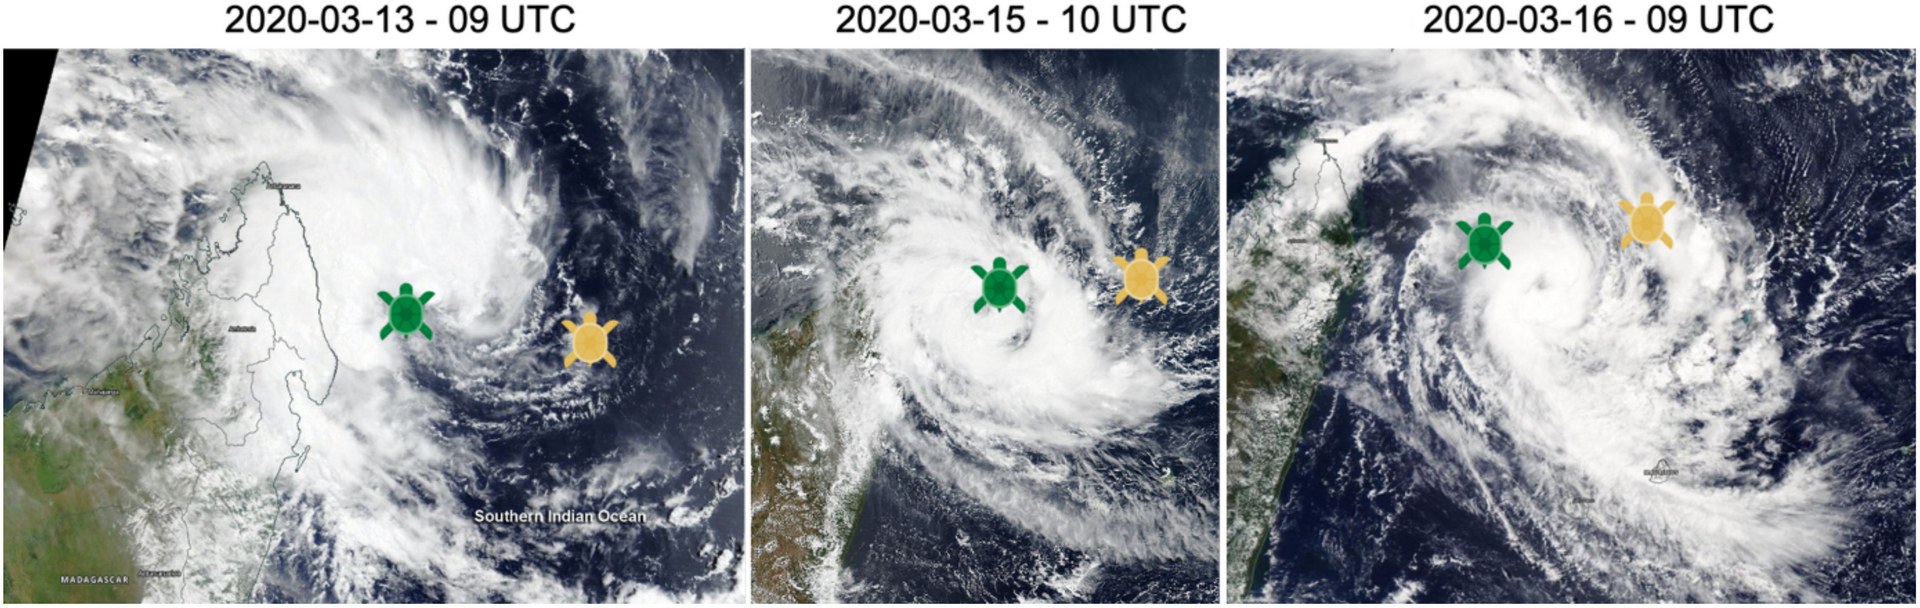 Как черепахи помогают учёным прогнозировать тропические циклоны